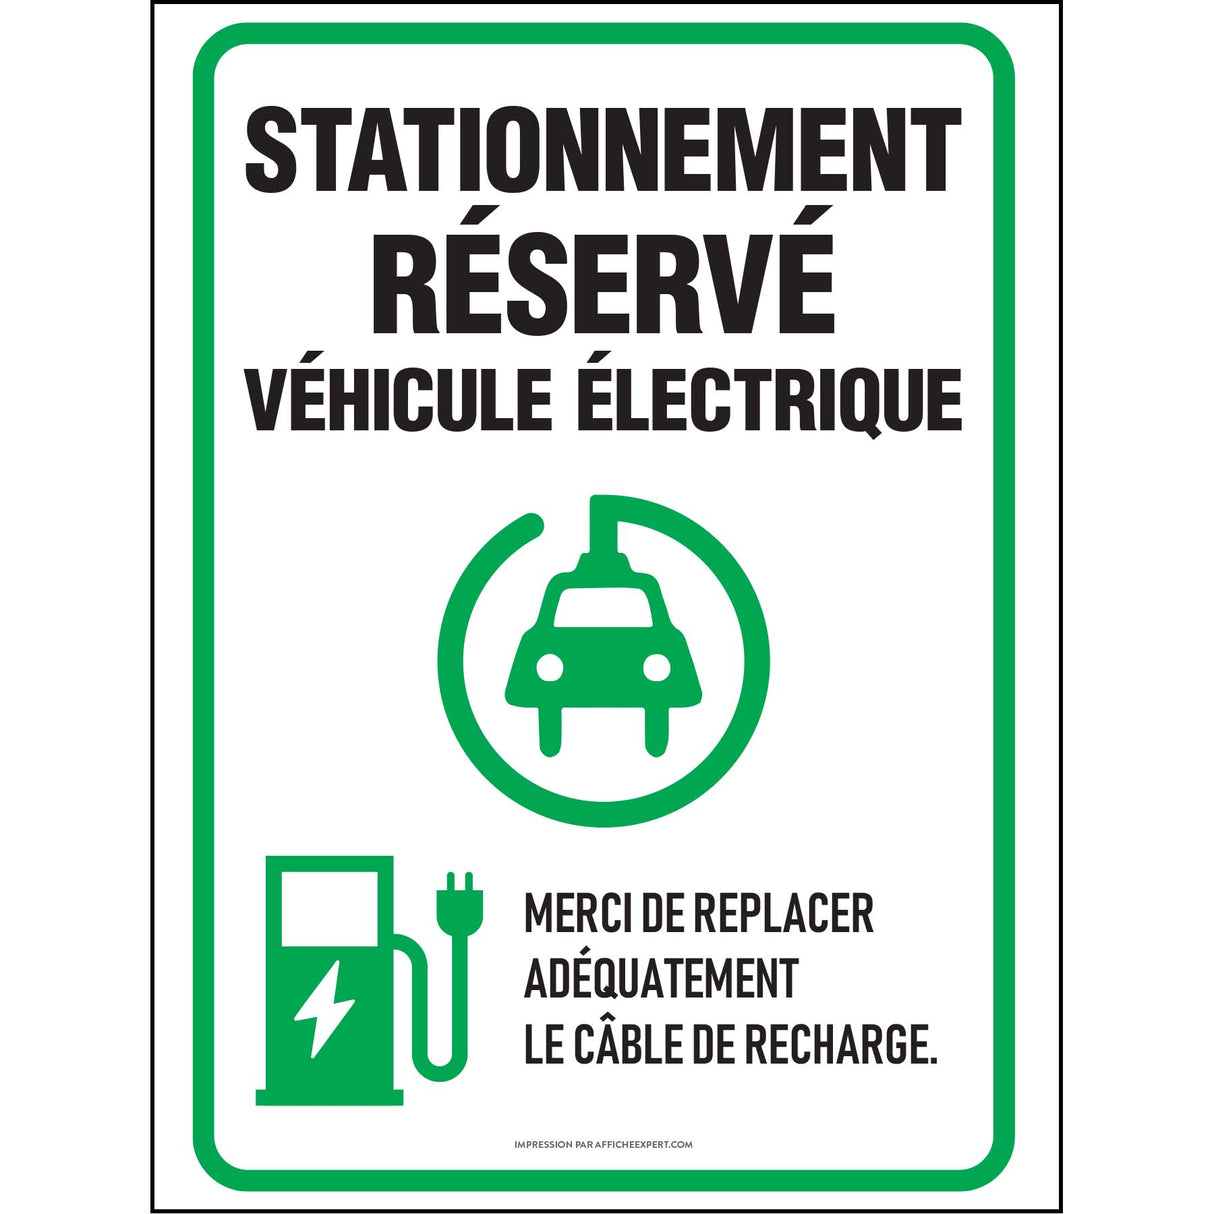 Stationnement réservé - véhicule électrique